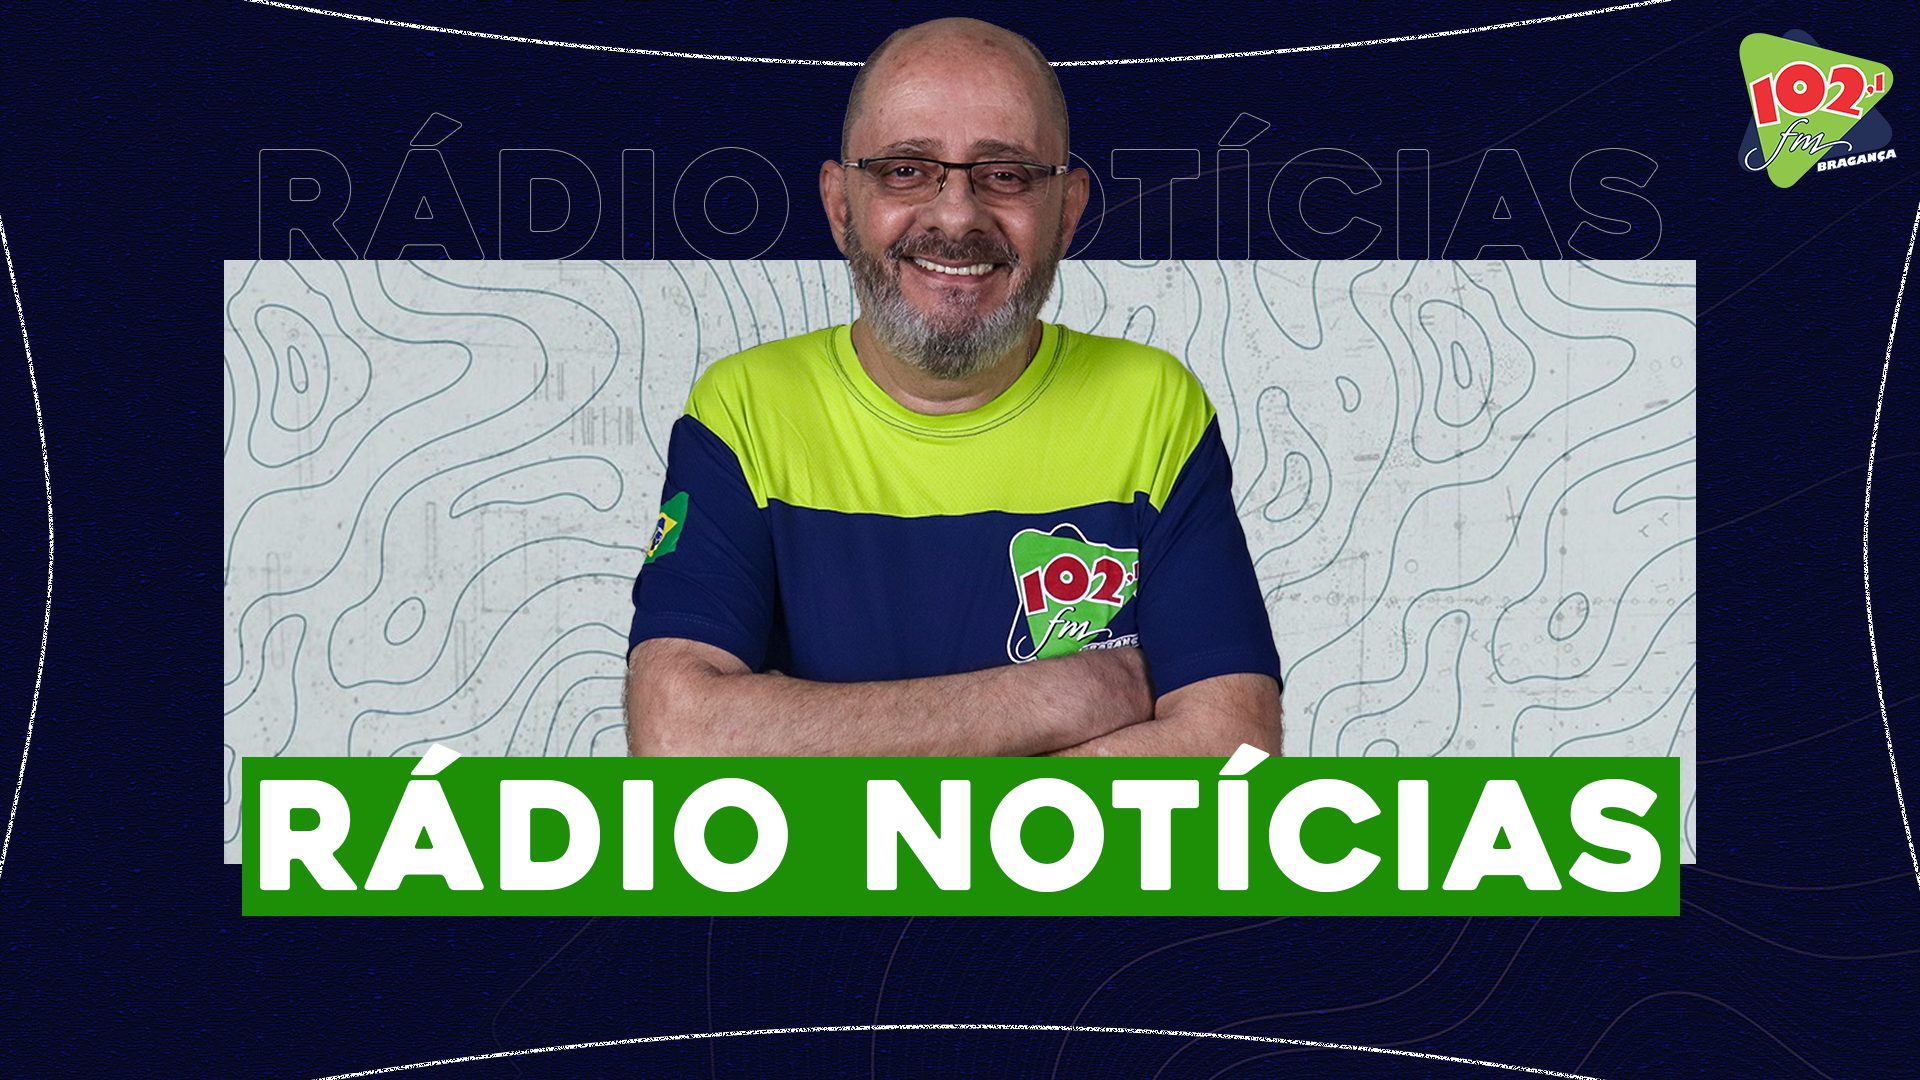 RÁDIO NOTÍCIAS 102FM BRAGANÇA PAULISTA